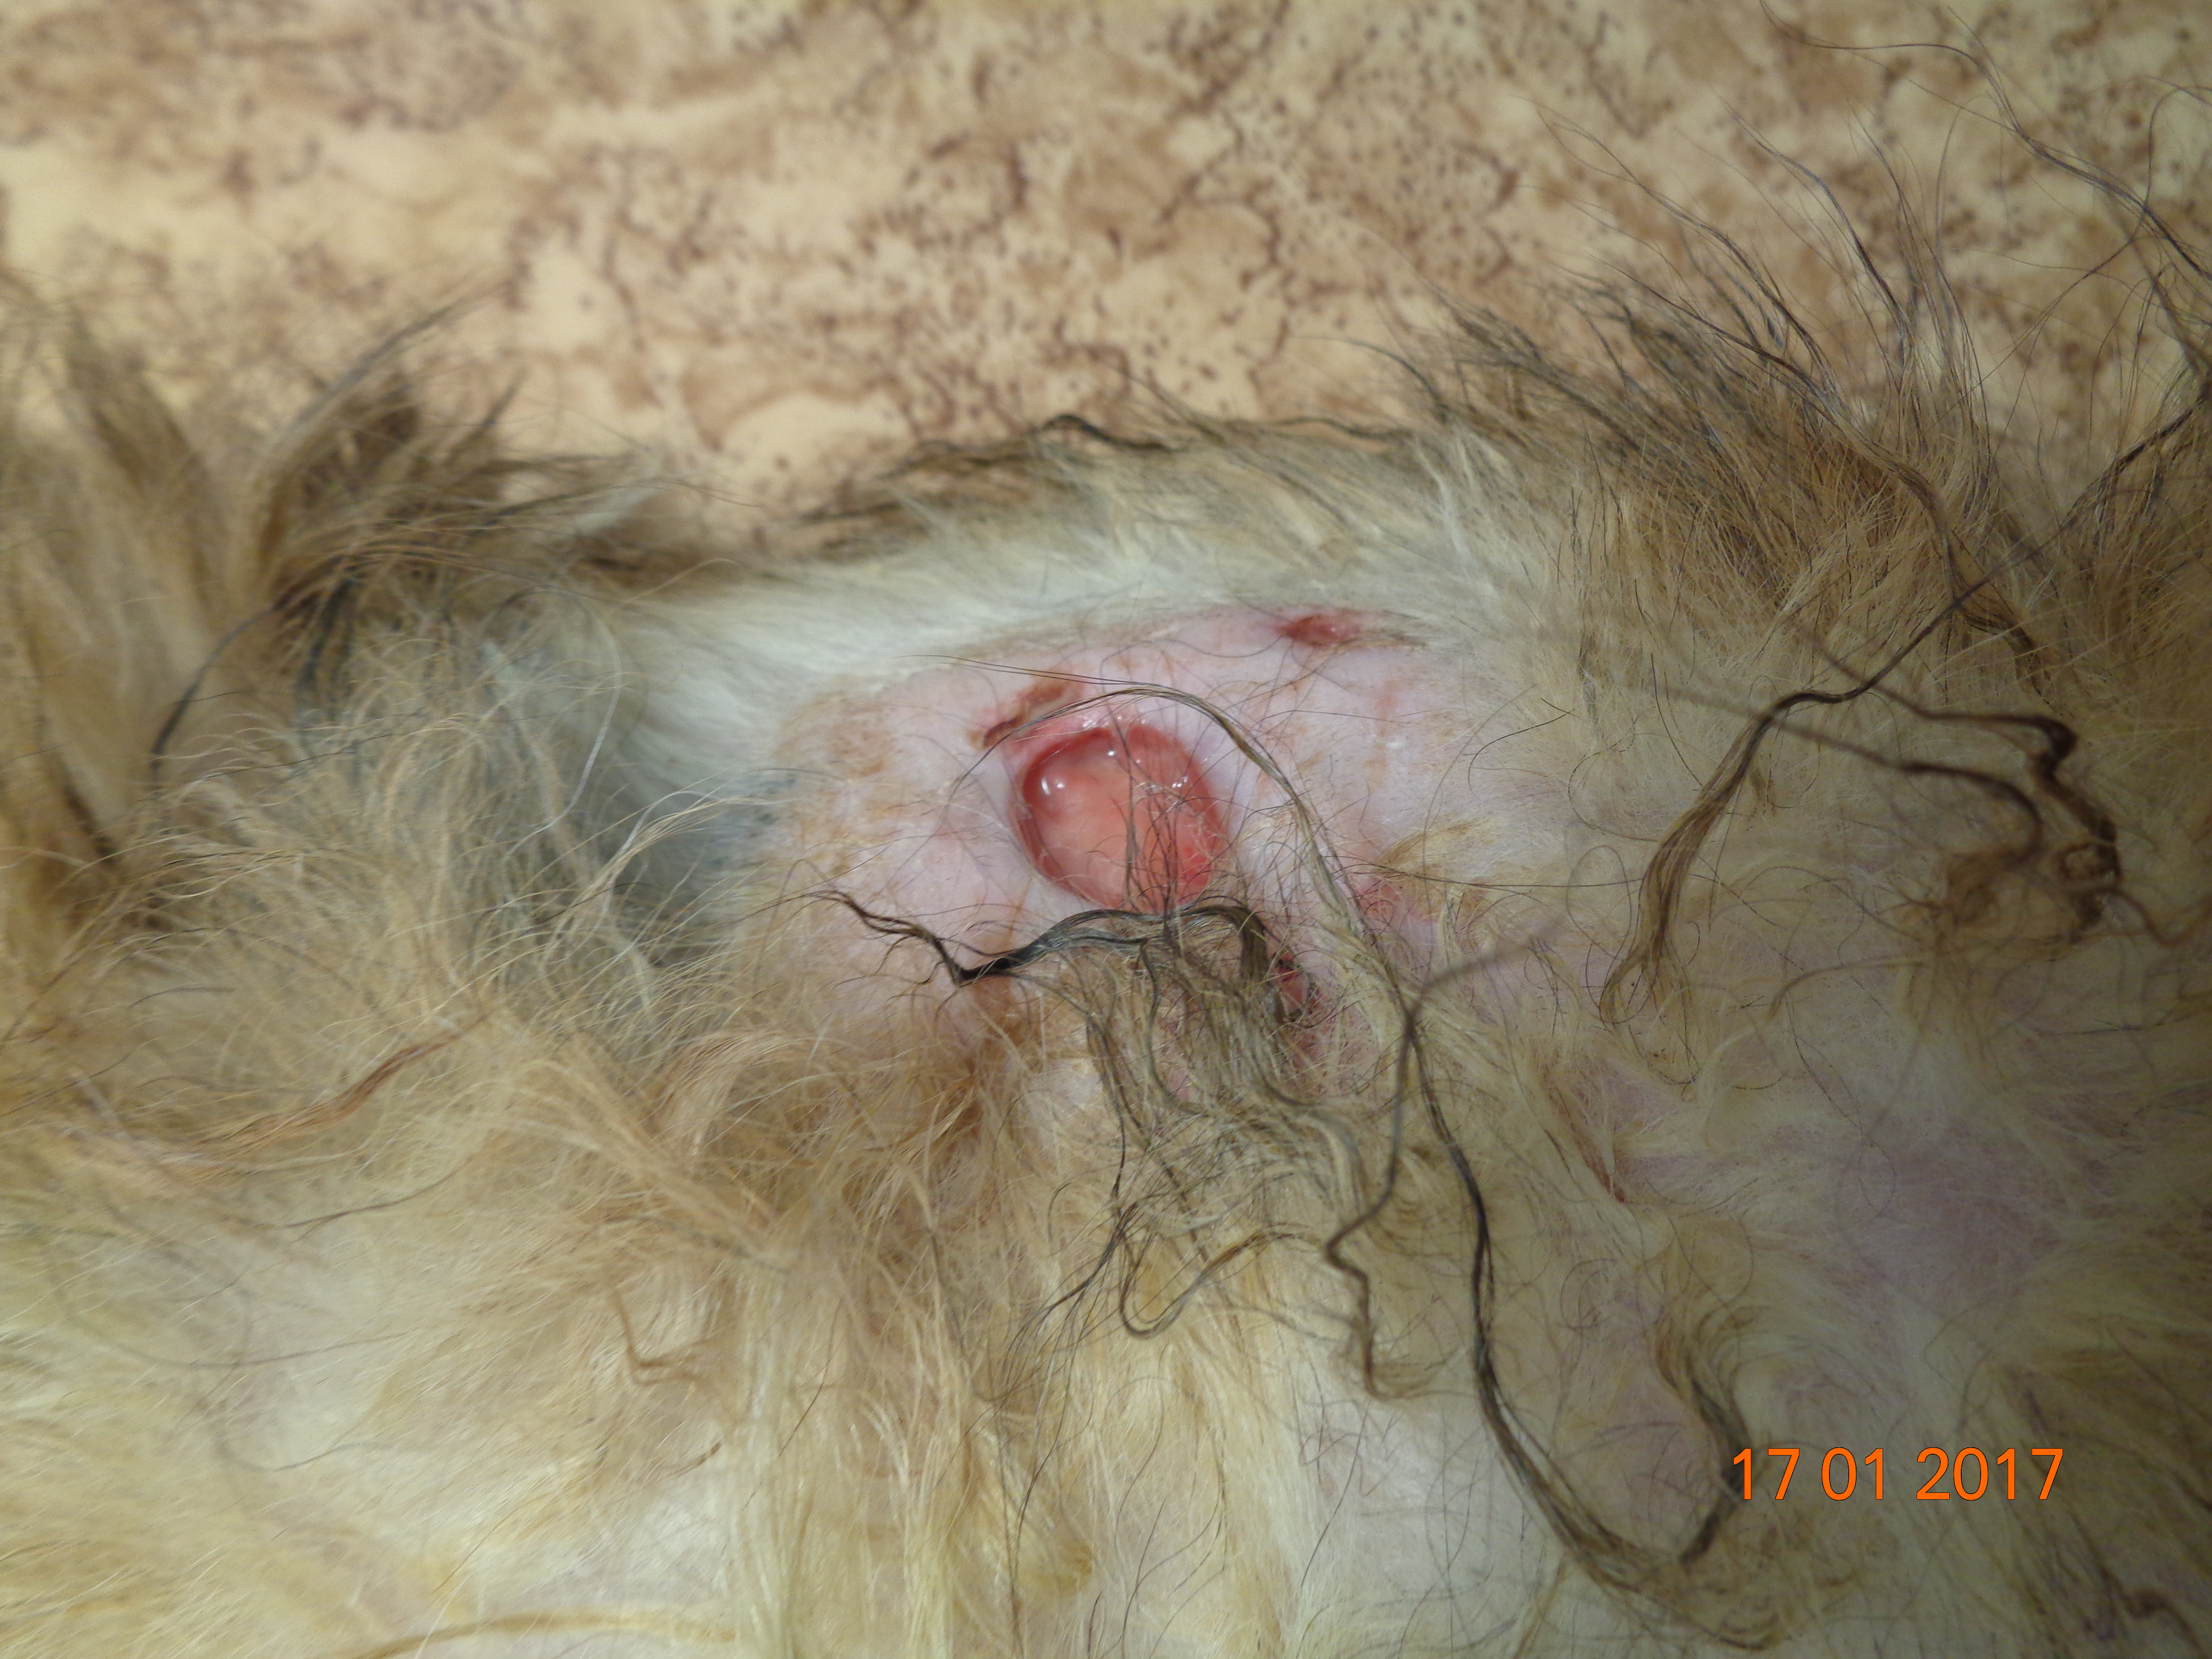 Стерильный идиопатический нодулярный панникулит у шелти. Подкожные узлы в области туловища с изъязвлением и обильной экссудацией